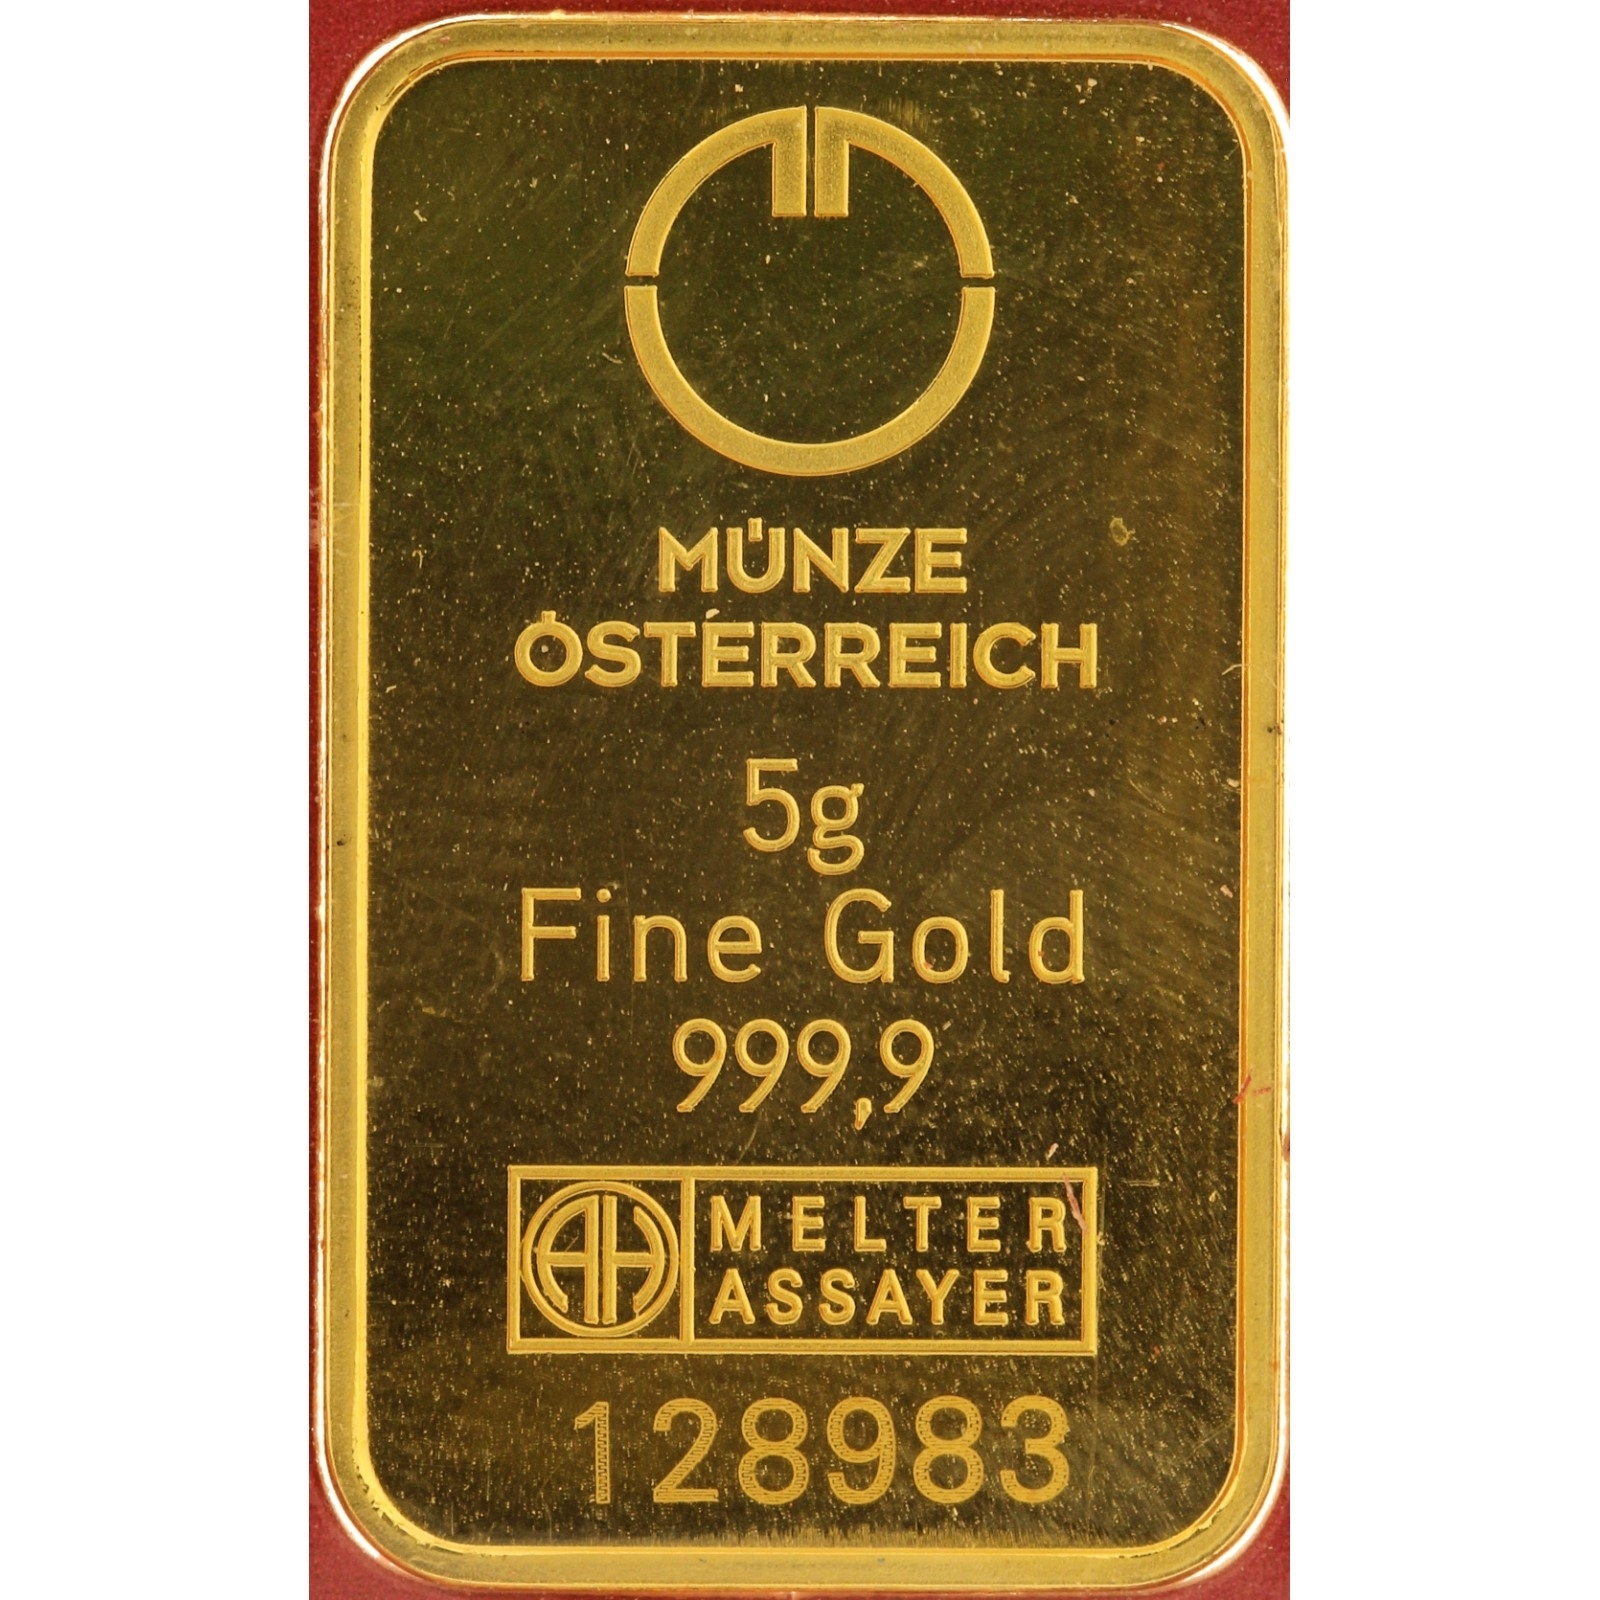 Munze Osterreich - 5 gram fine gold - Kinebar